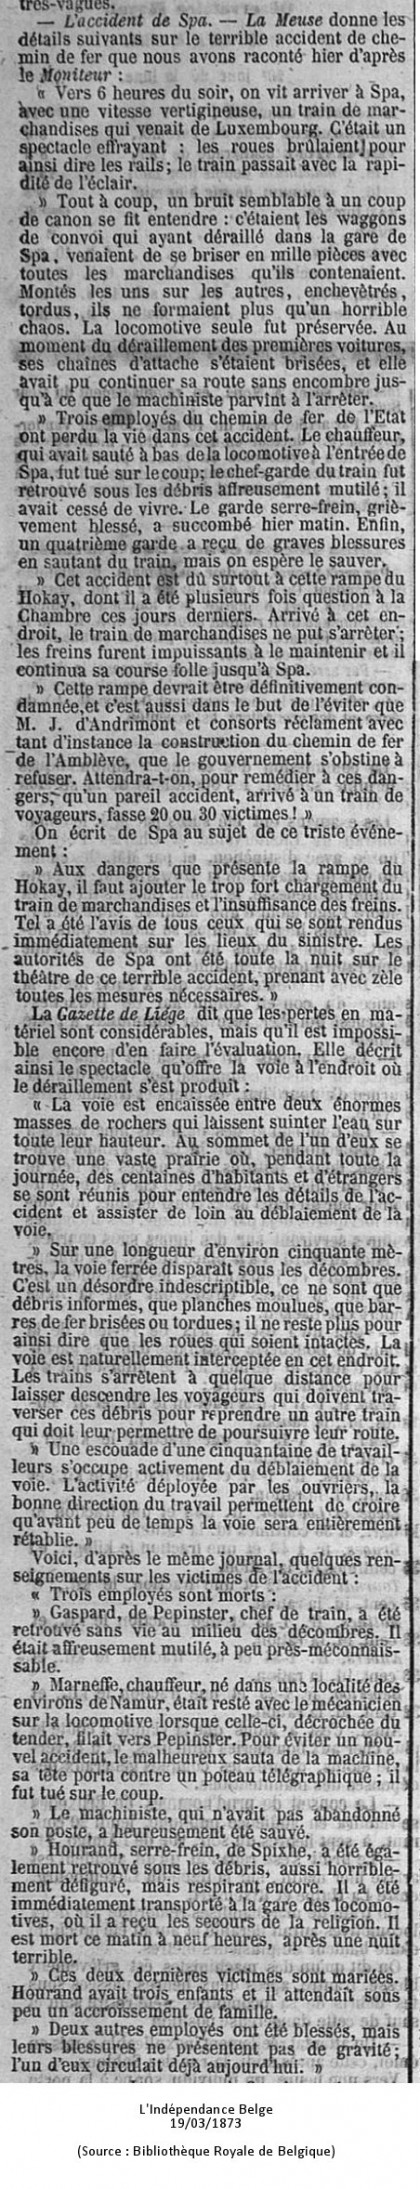 Indépendance Belge 19/03/1873 (Source : Bibliothèque Royale de Belgique)